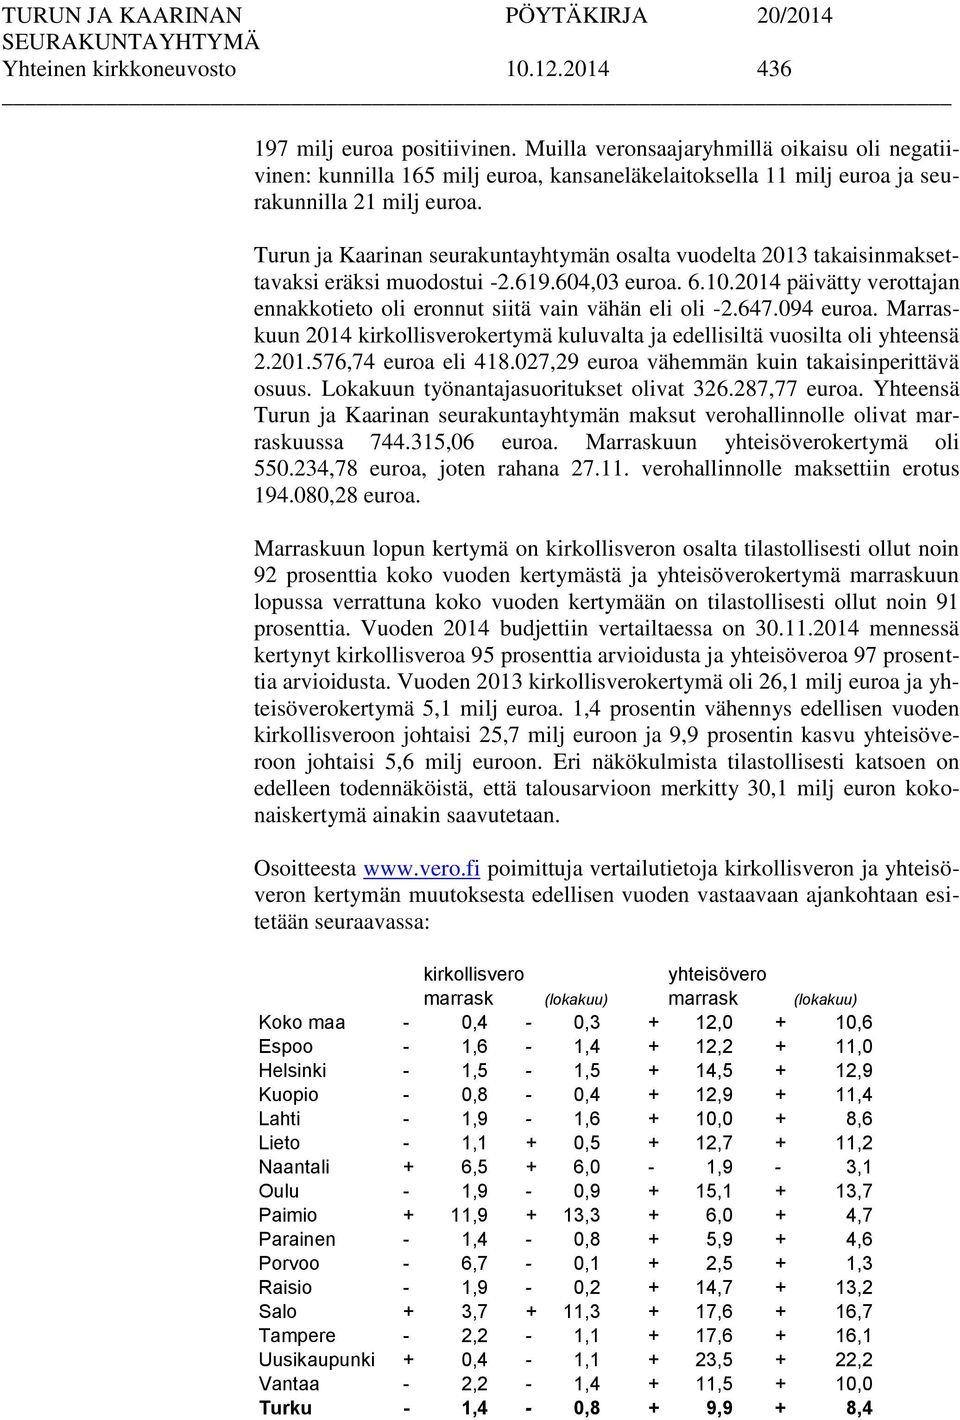 Turun ja Kaarinan seurakuntayhtymän osalta vuodelta 2013 takaisinmaksettavaksi eräksi muodostui -2.619.604,03 euroa. 6.10.2014 päivätty verottajan ennakkotieto oli eronnut siitä vain vähän eli oli -2.